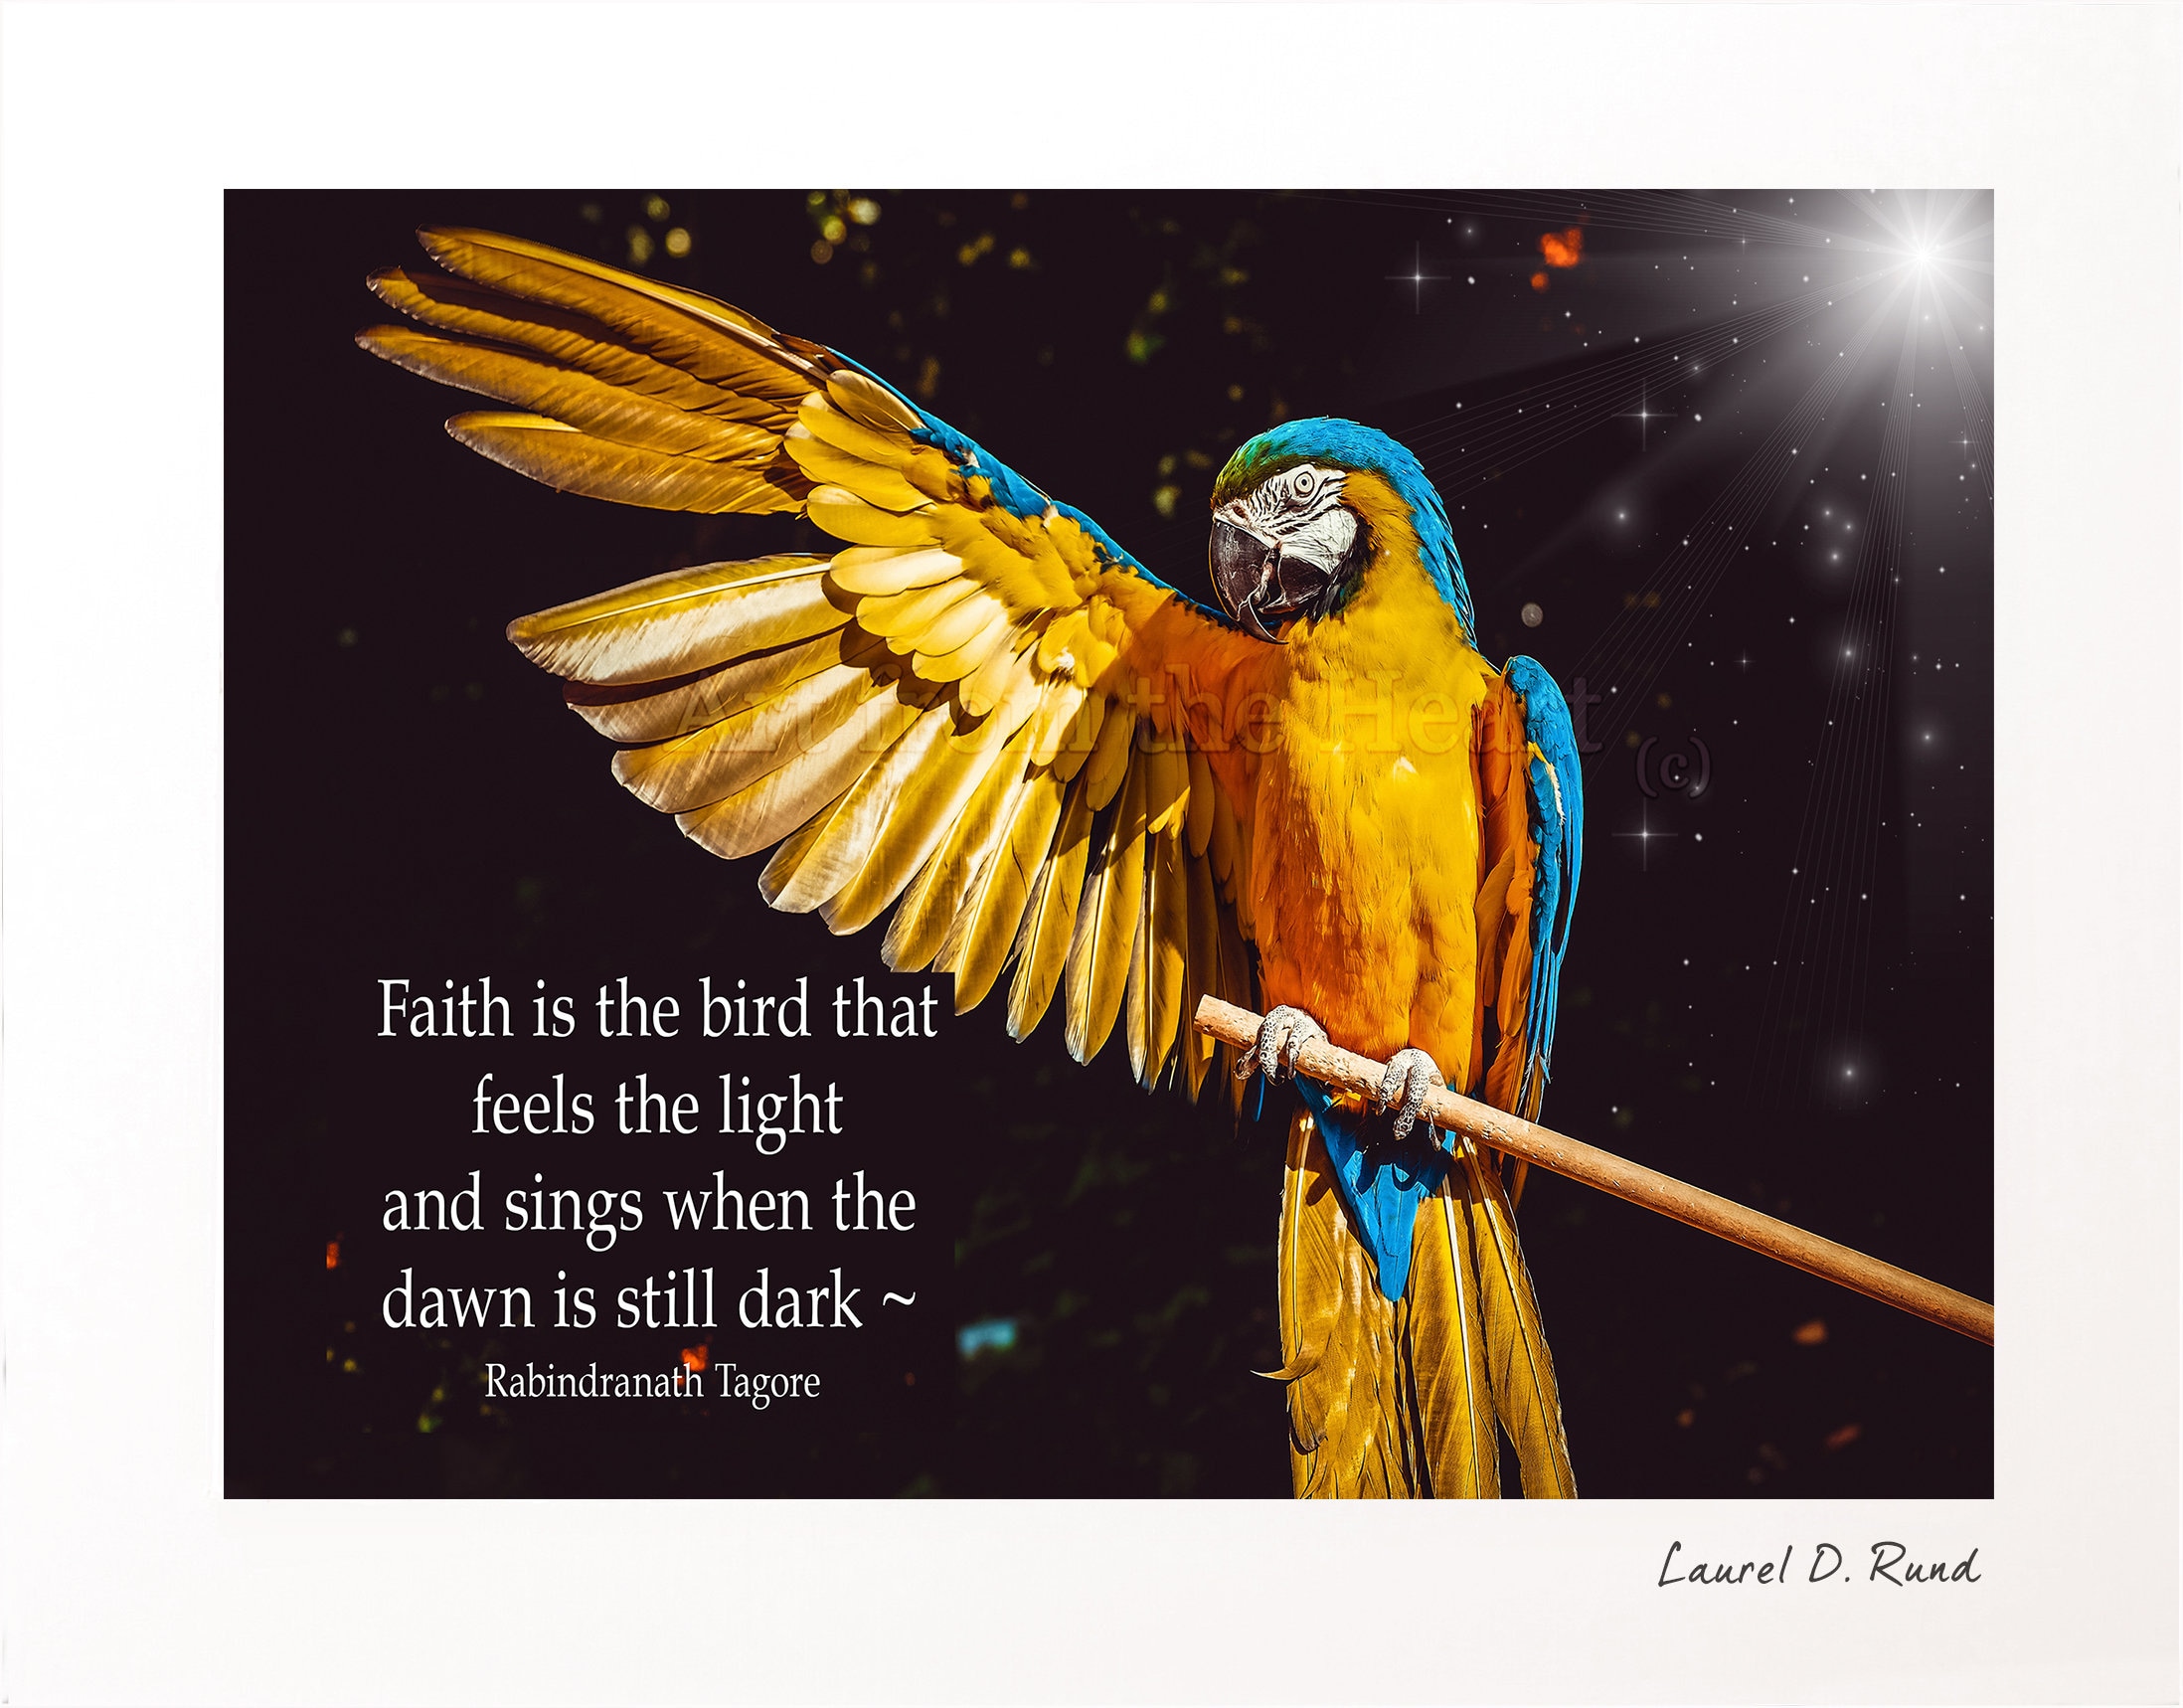 essay on faith is the bird that feels the light